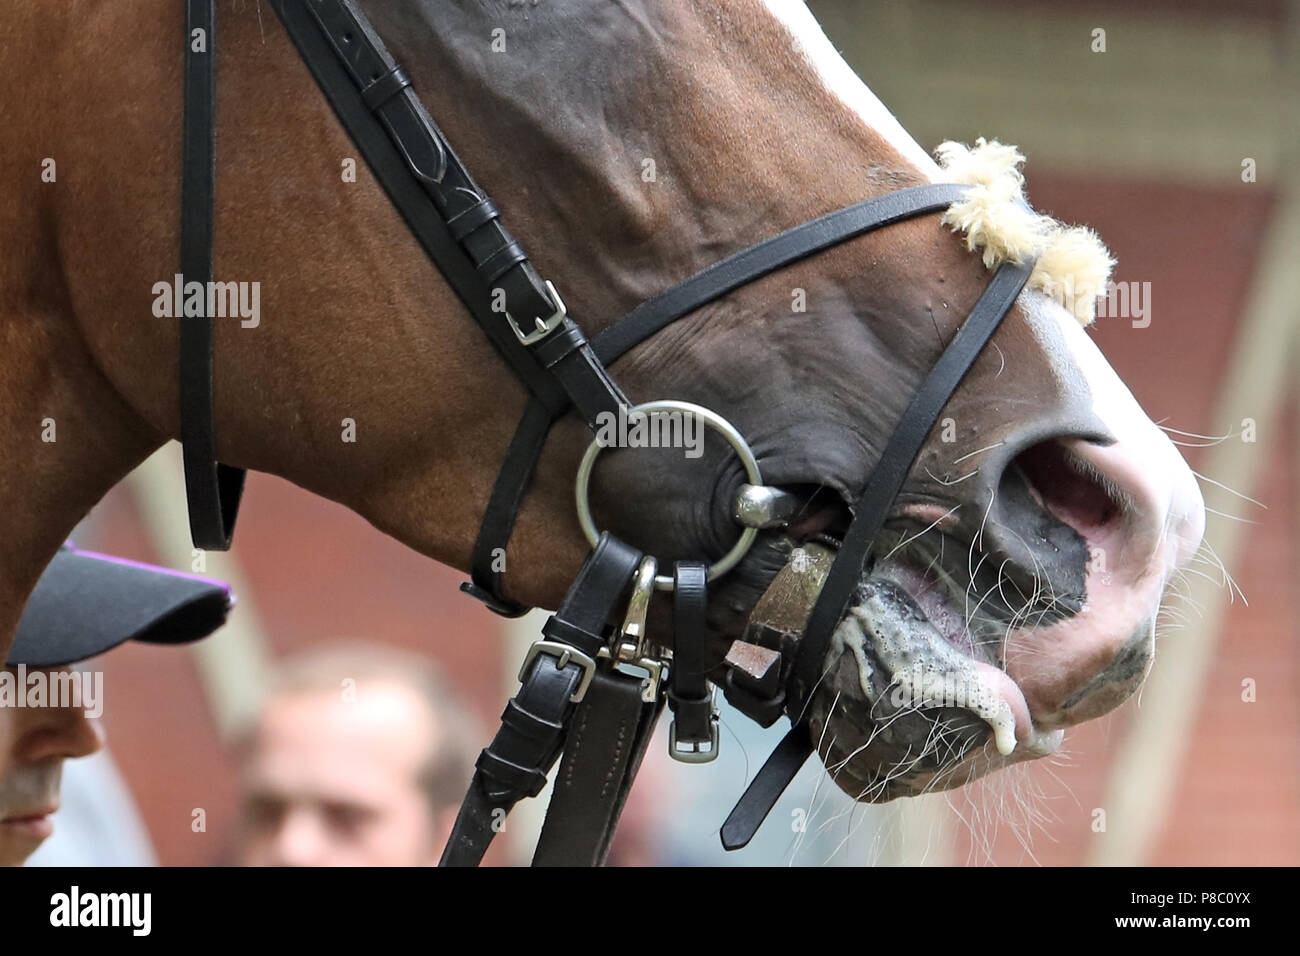 Dresda, dettaglio cavallo con linguetta codato e fascetta di bloccaggio Foto Stock